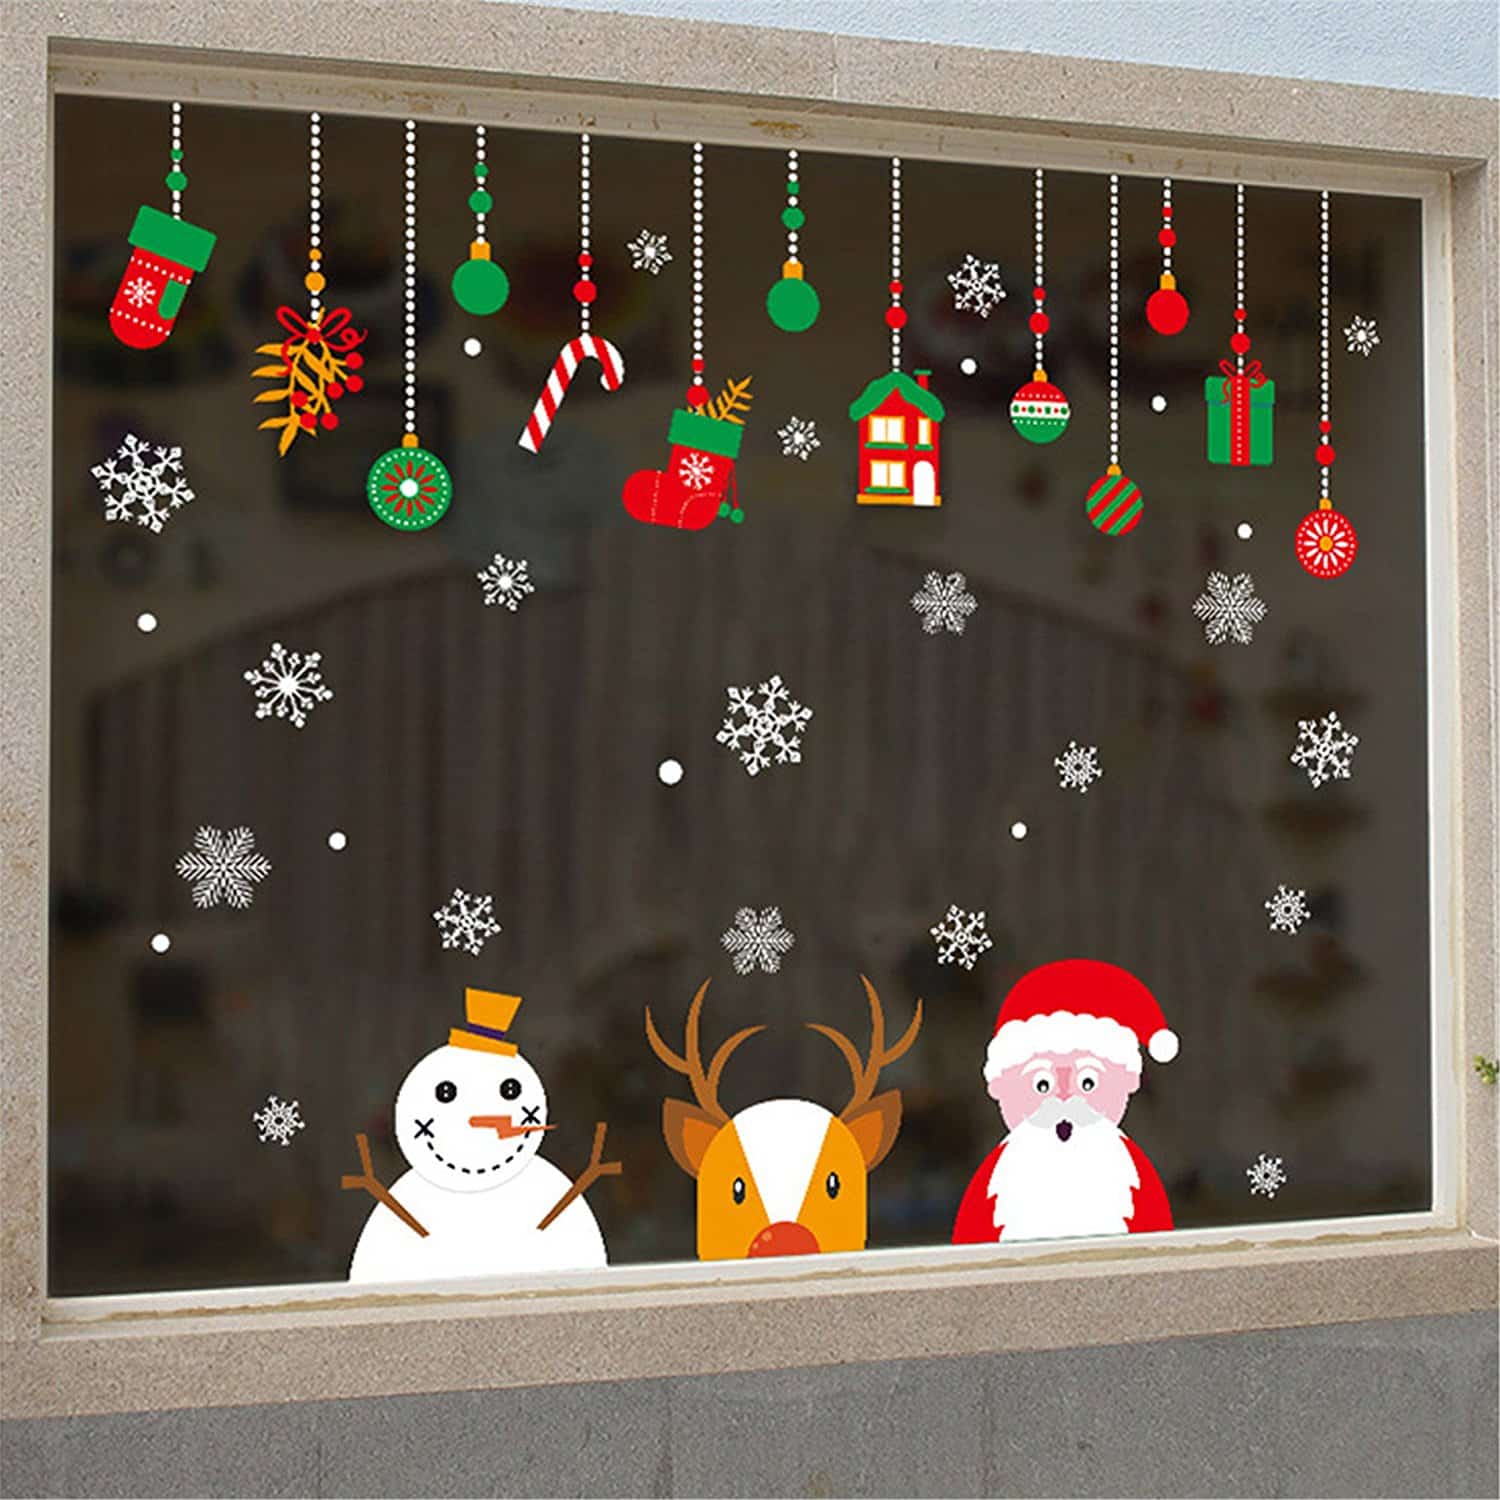 decoracion navideña en ventanas